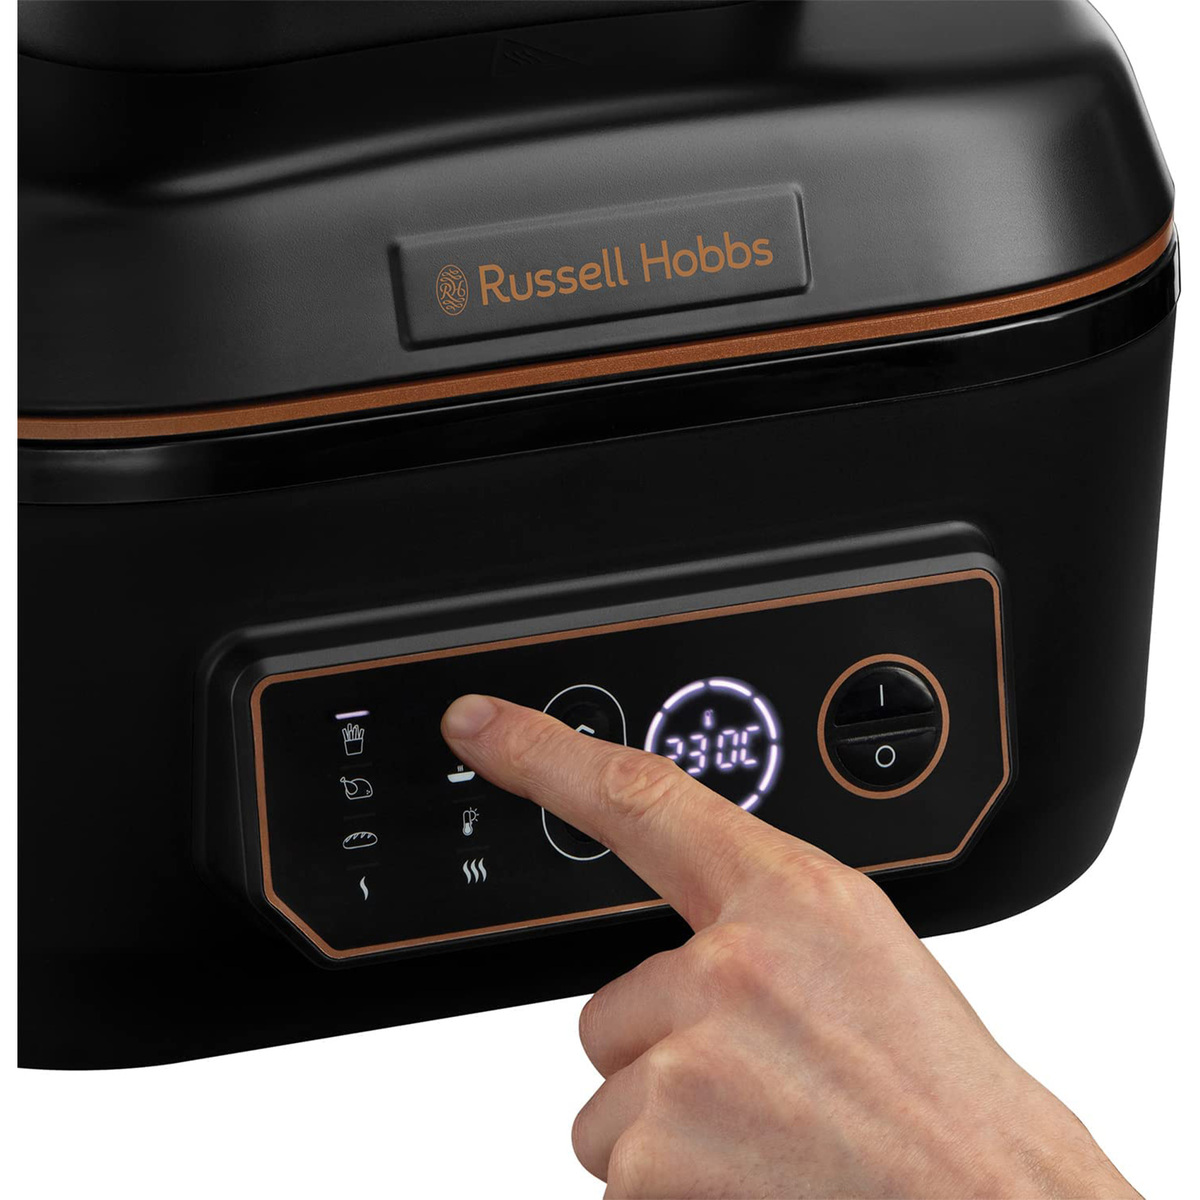 Russell Hobbs SatisFry Digital Air Fryer and Multicooker, 5.5 L, 1745 W, Black, 26520